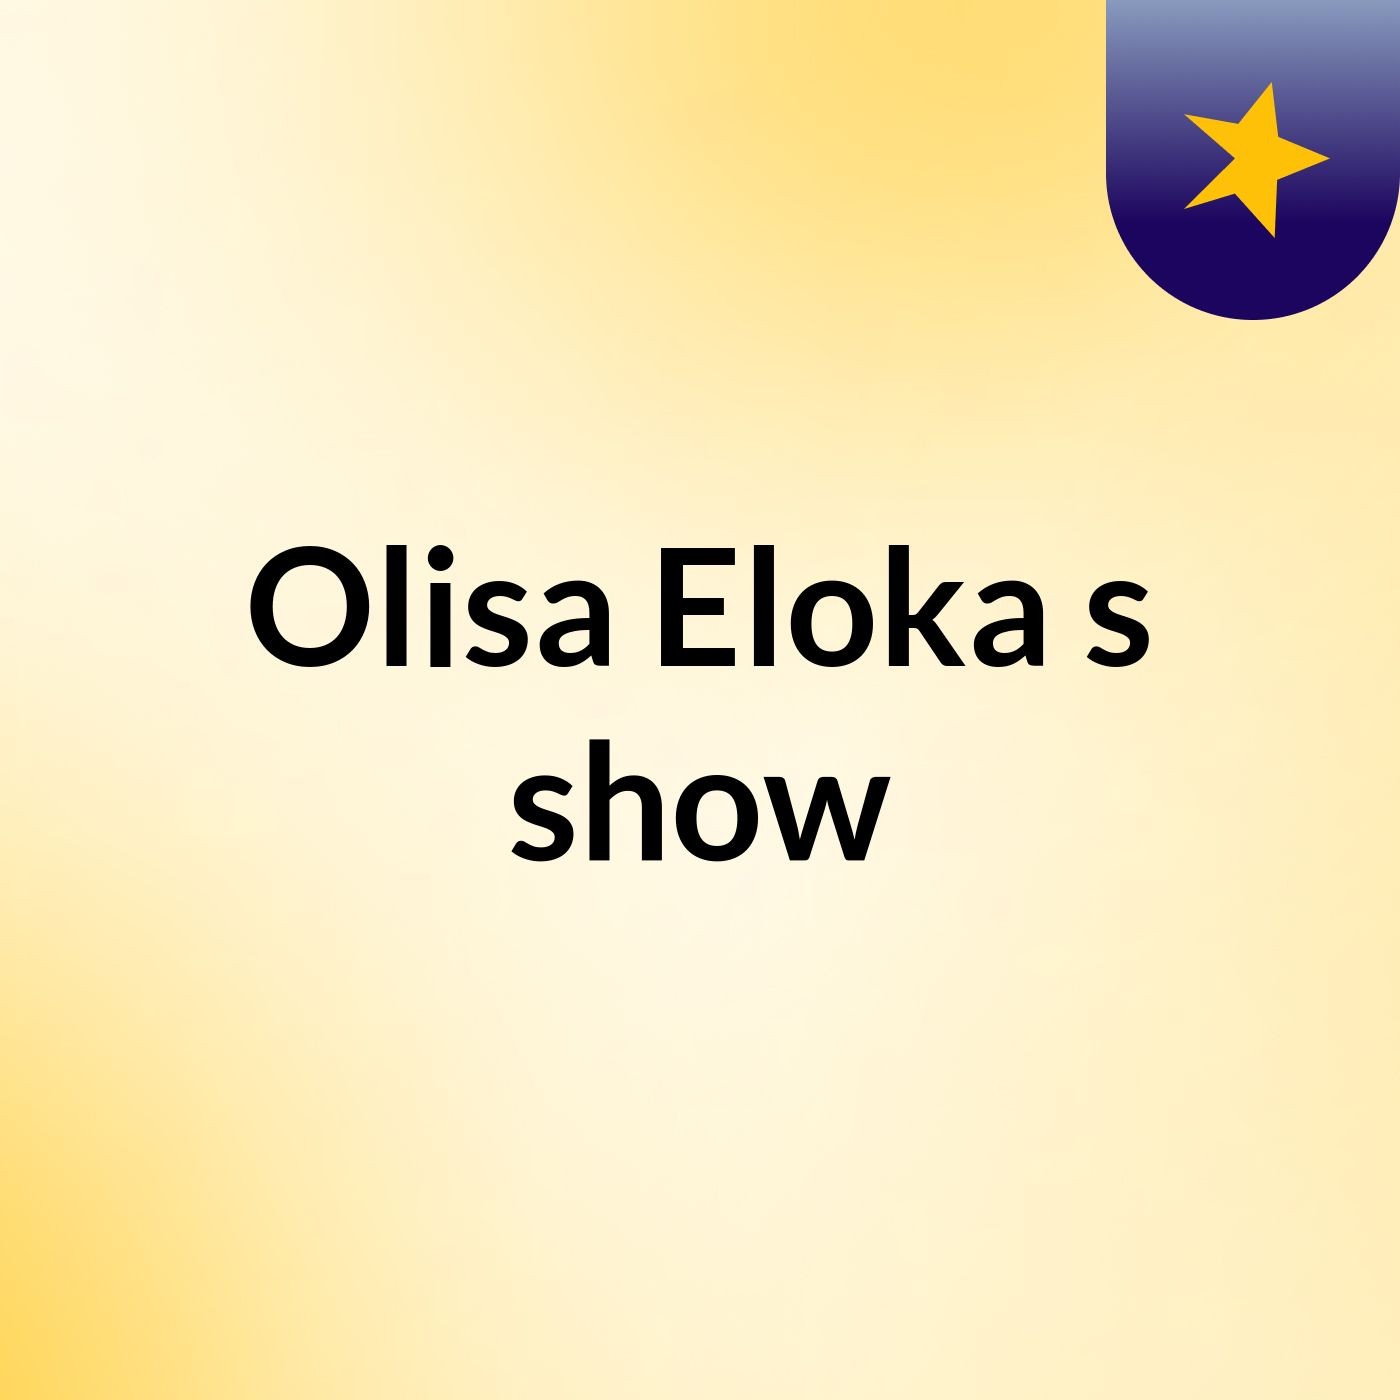 Olisa Eloka's show